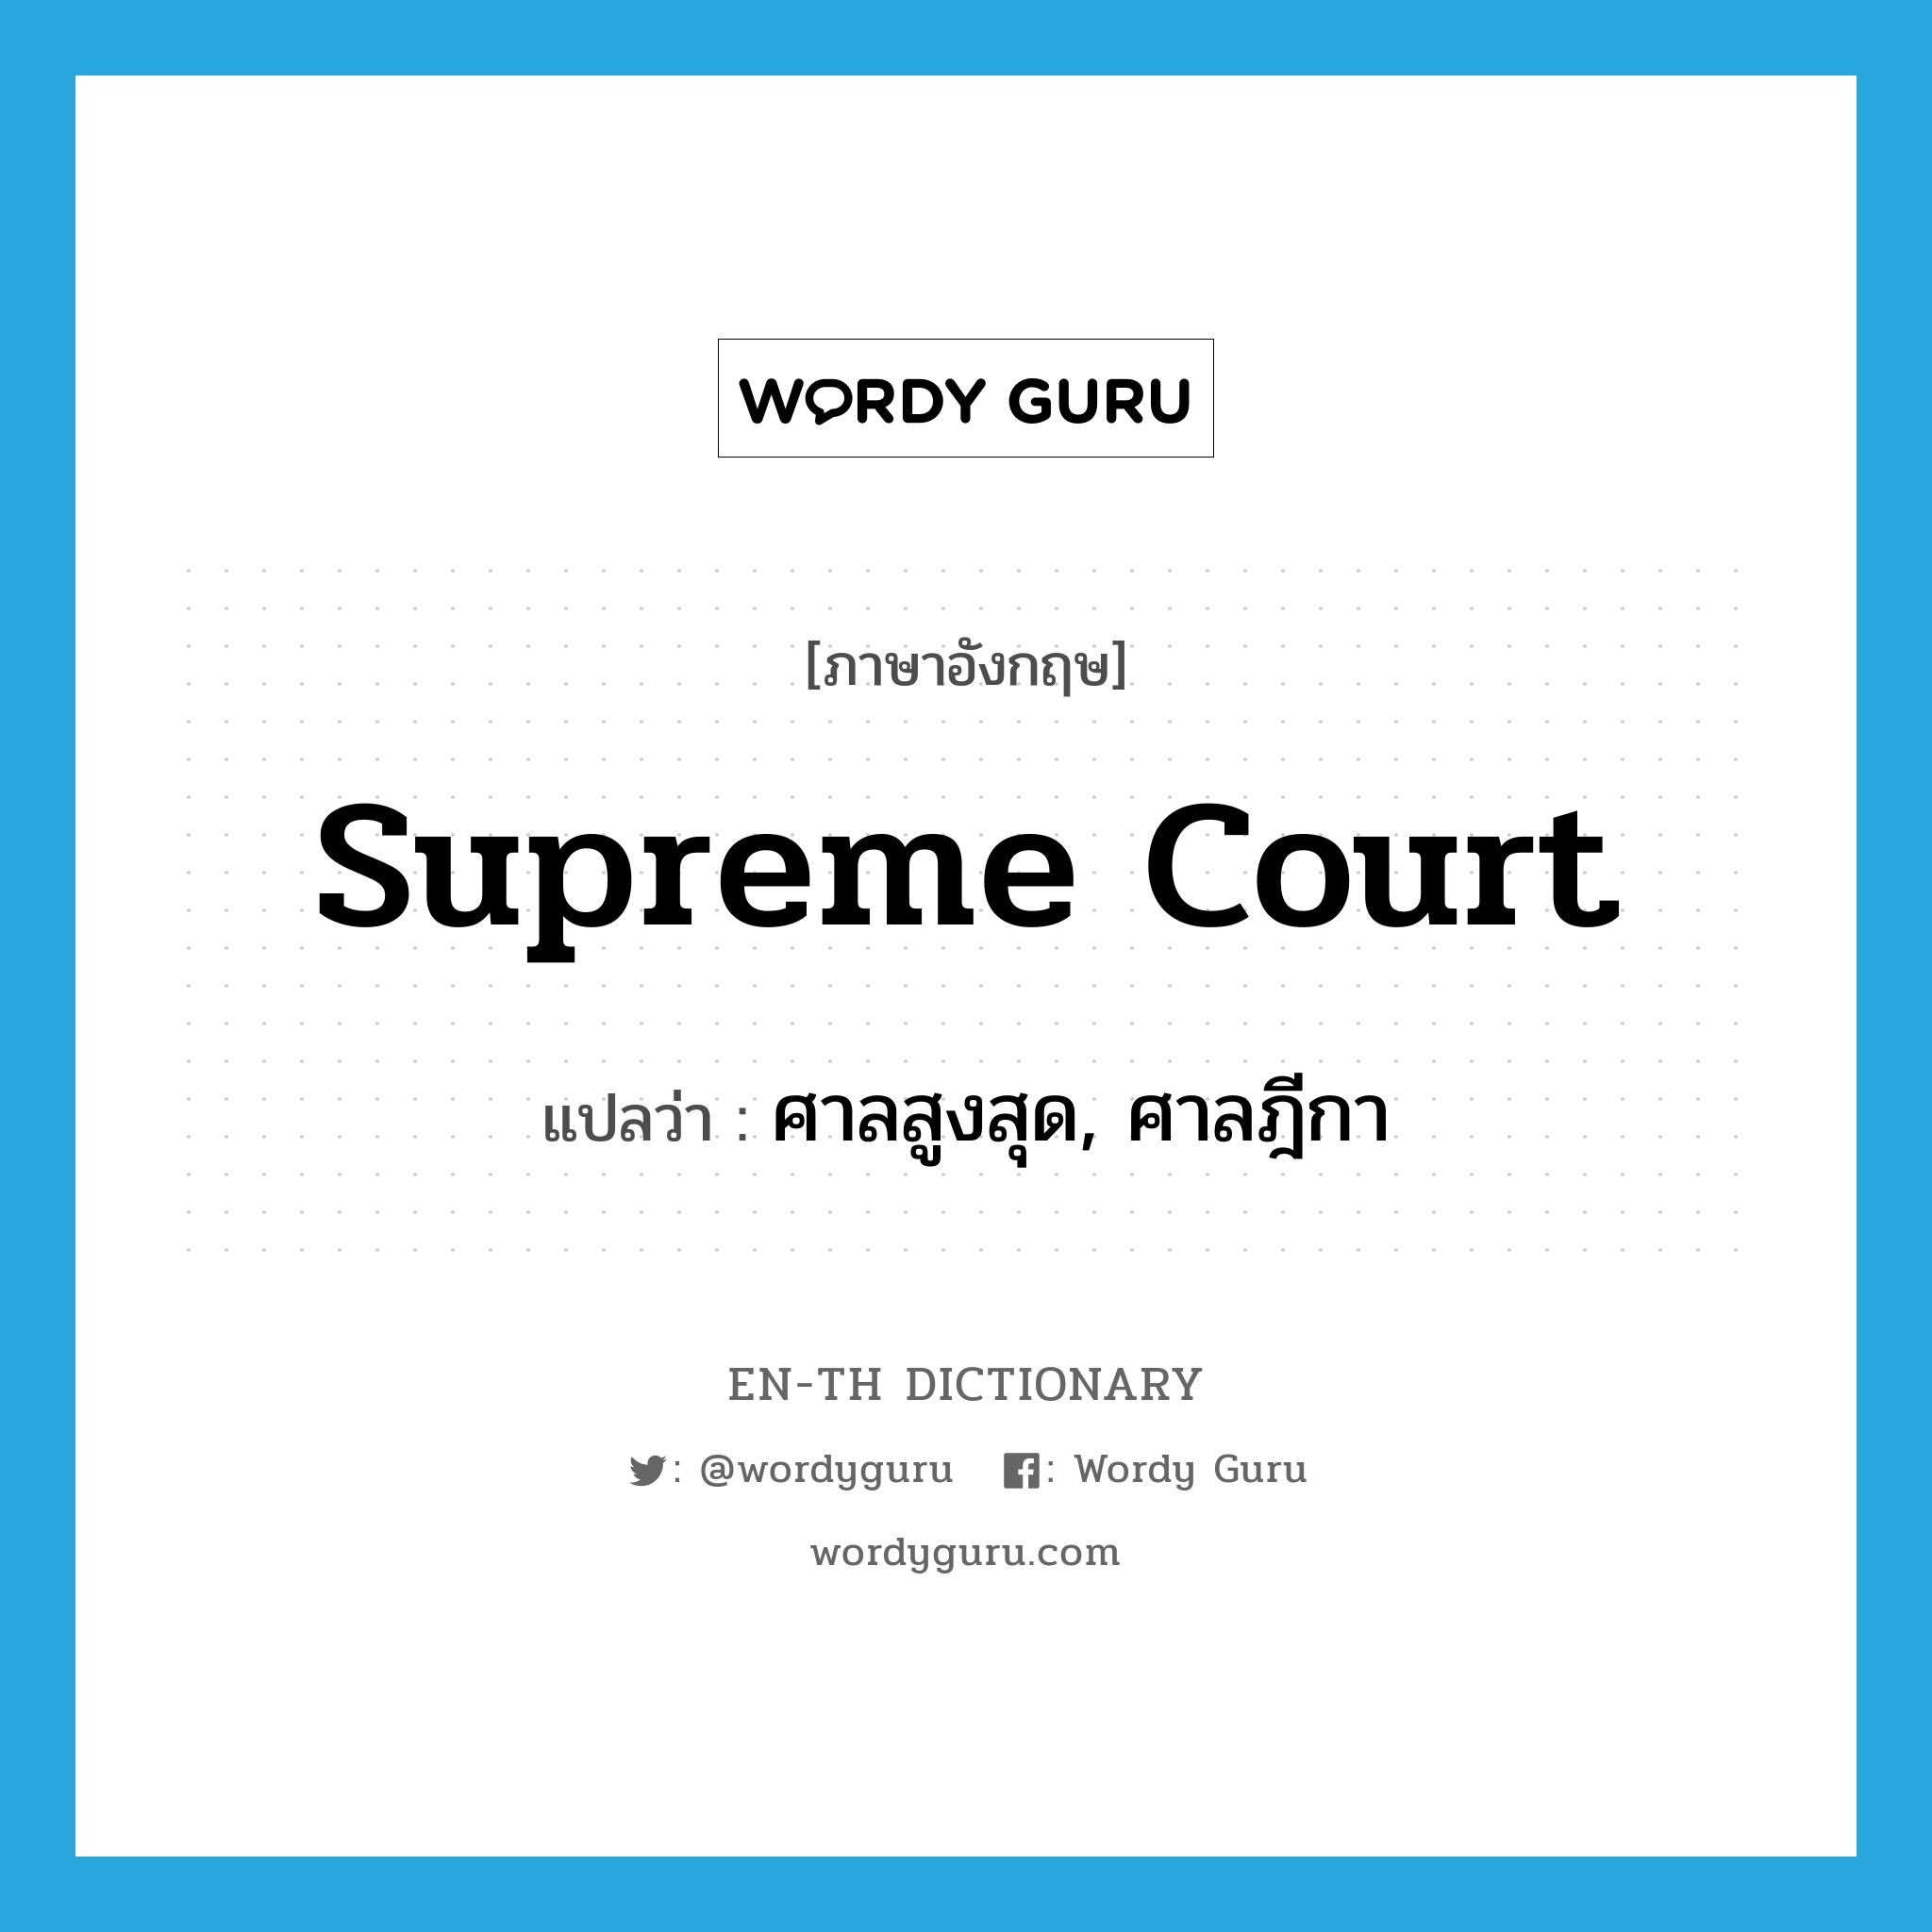 ศาลสูงสุด, ศาลฎีกา ภาษาอังกฤษ?, คำศัพท์ภาษาอังกฤษ ศาลสูงสุด, ศาลฎีกา แปลว่า Supreme Court ประเภท N หมวด N